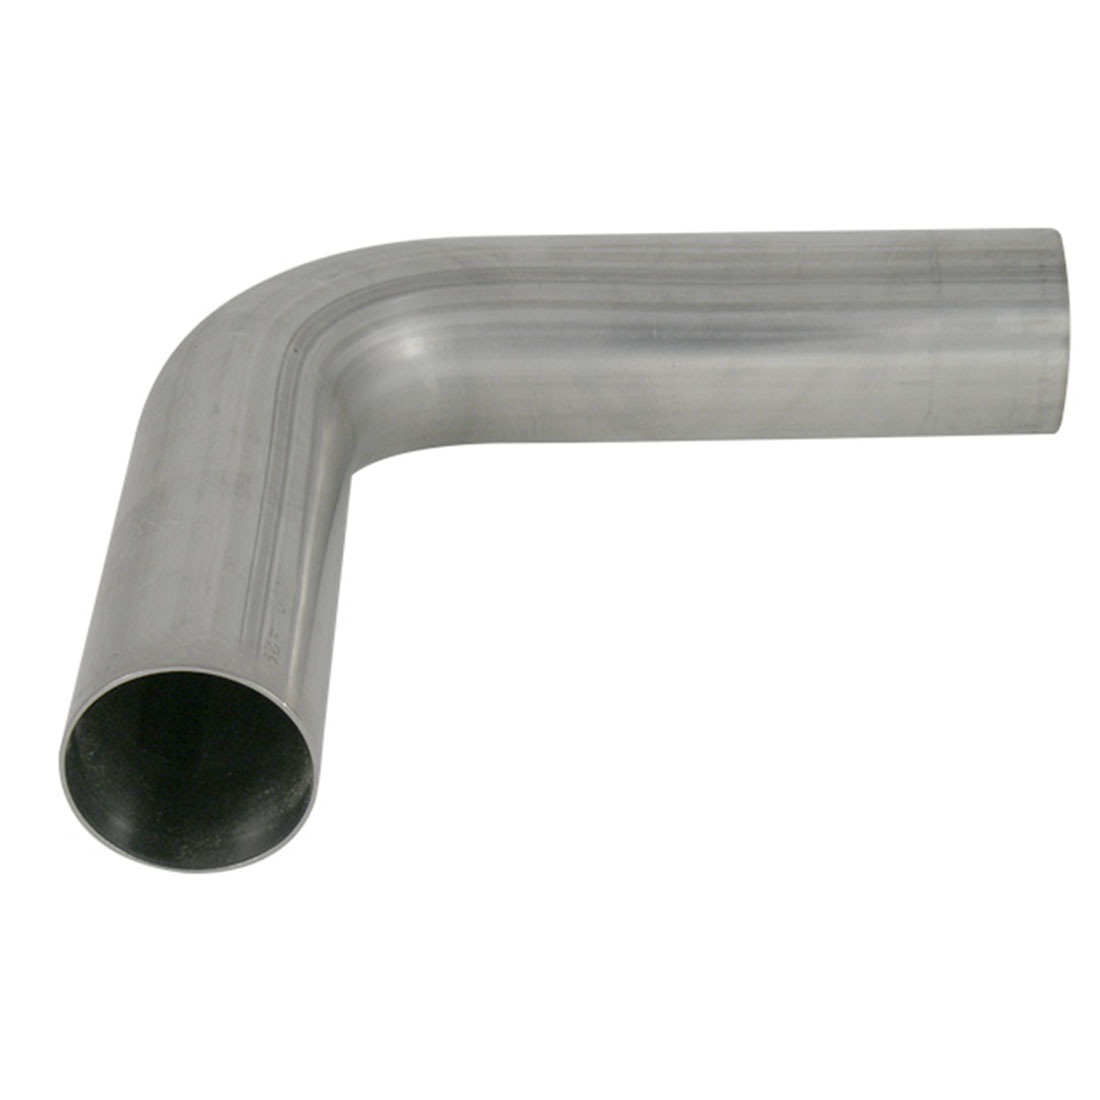 Exhaust Pipe Mandrel Bend - 1 3/4" 90 Degree 45mm Mild Steel